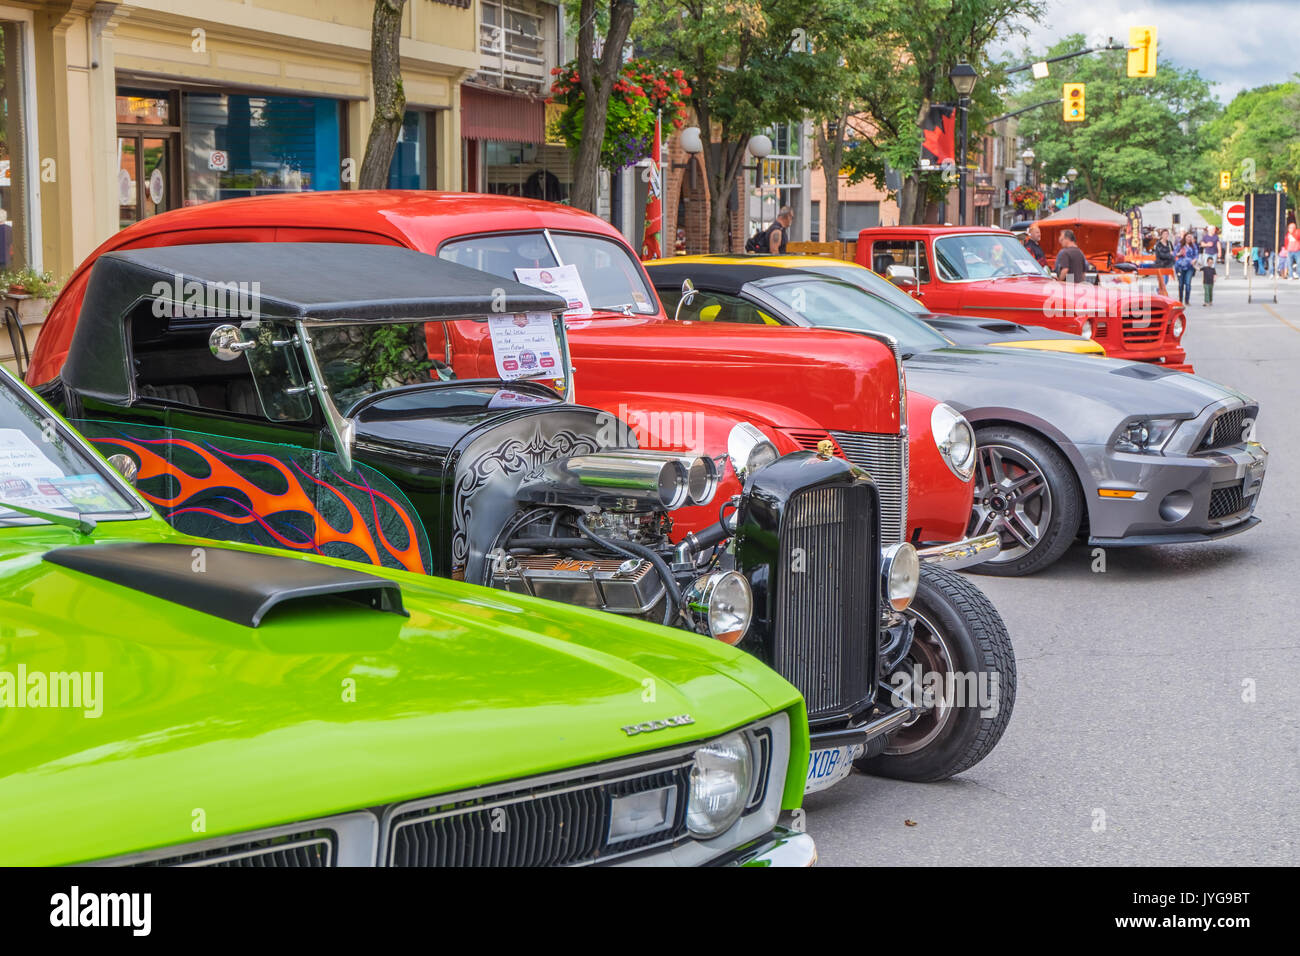 ORILLIA ONTARIO KANADA - 17. August 2017: 19. jährlichen Downtown Orillia Classic Car Show. Eine erstaunliche Sammlung von über 400 klassische Autos auf Anzeige auf Stockfoto